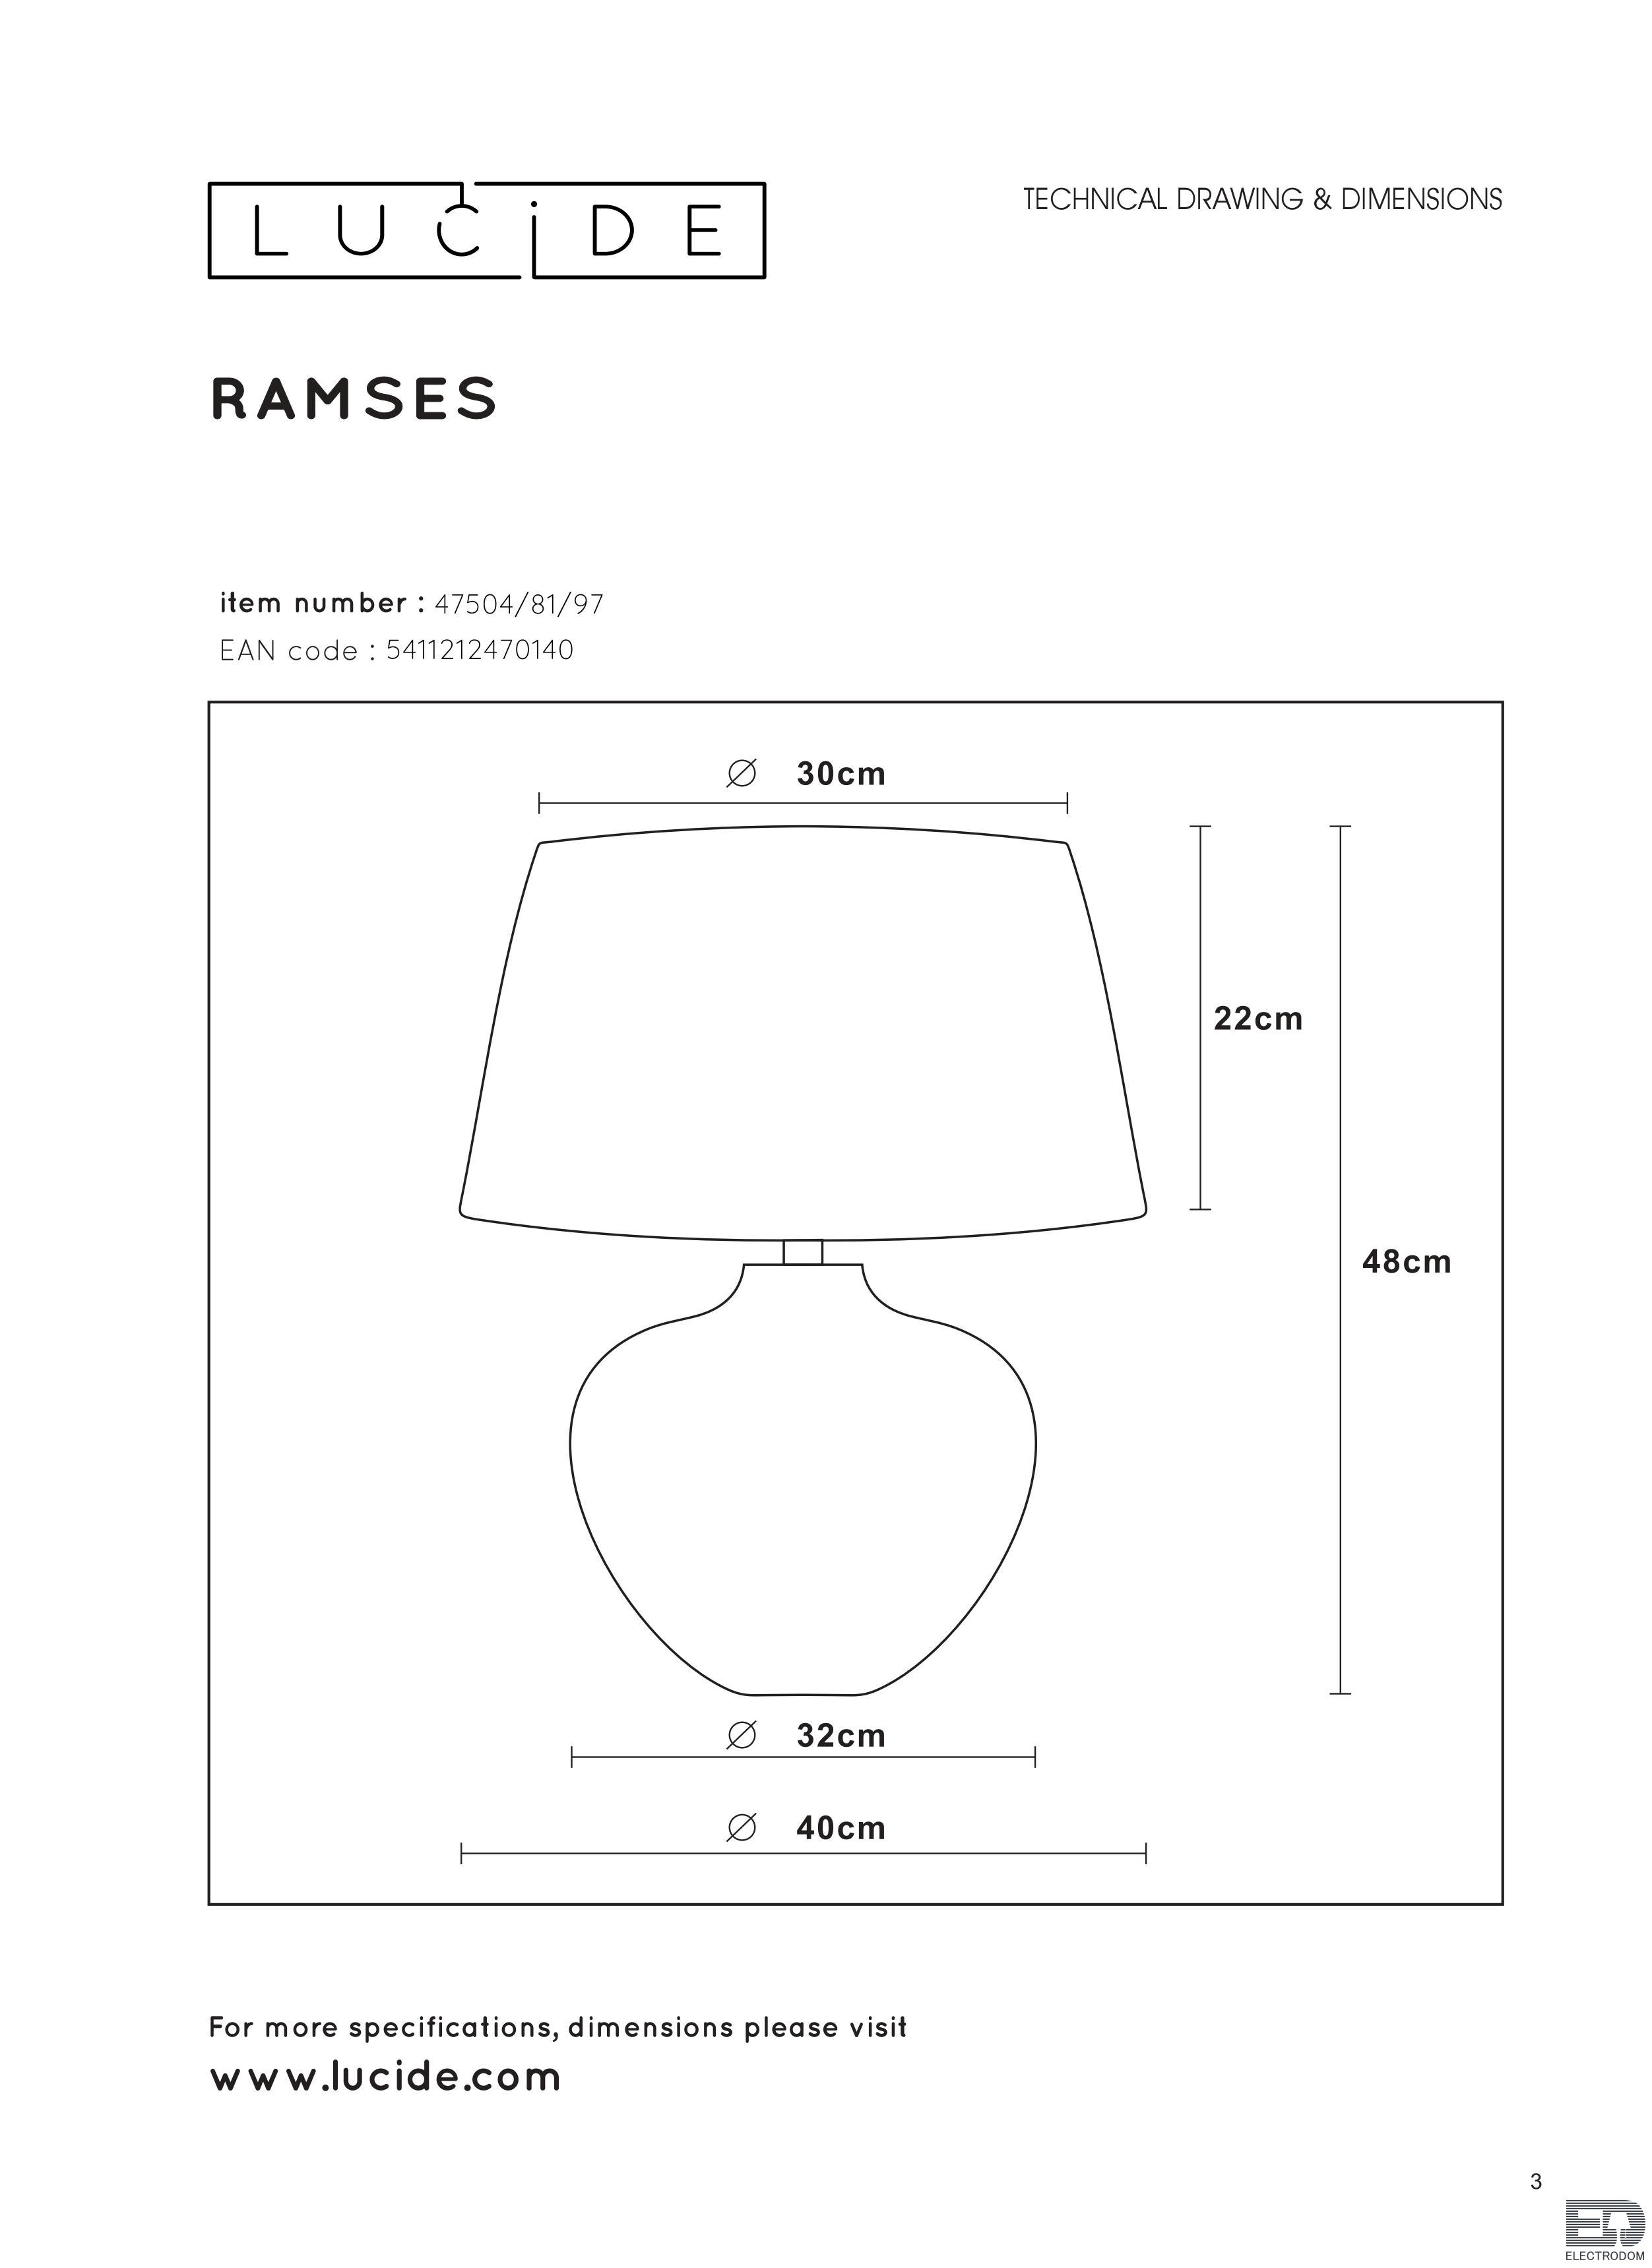 Настольная лампа Lucide Ramses 47504/81/97 - цена и фото 4